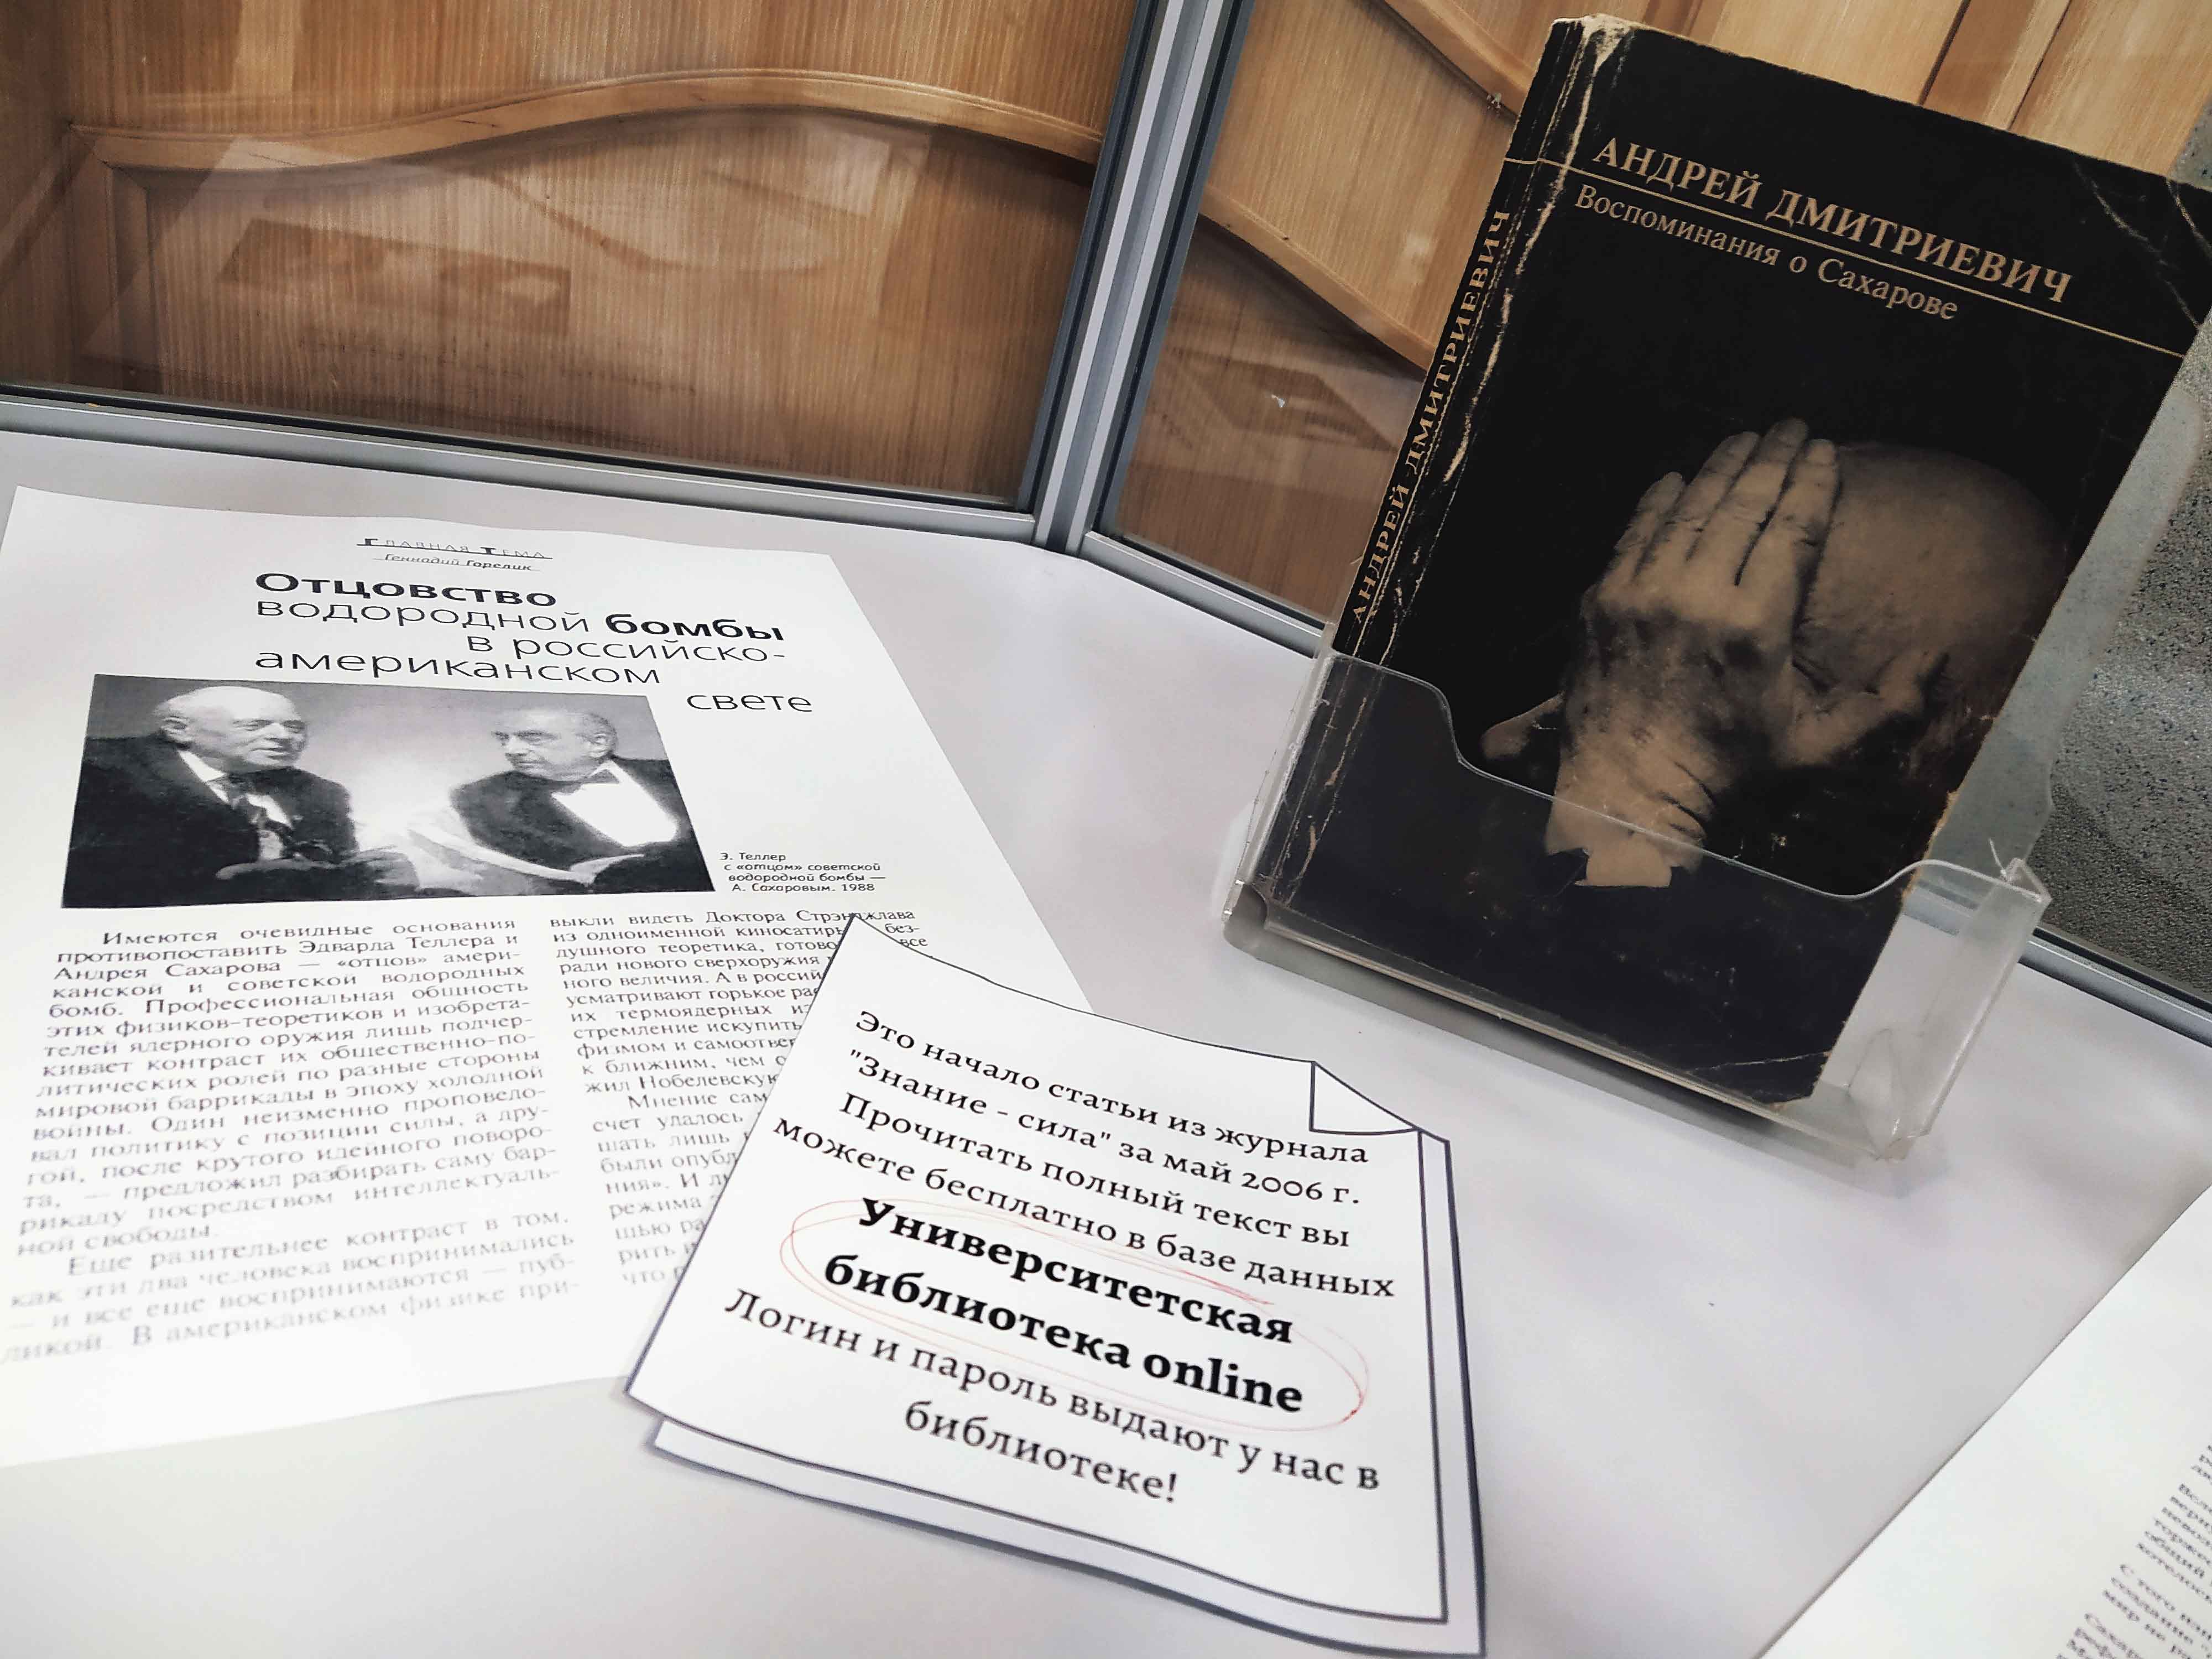 21 мая 1921 года родился Андрей Дмитриевич Сахаров – советский физик-теоретик, академик Академии наук, общественный деятель. До 28 мая в Троицкой (3-й районной) библиотеке Петроградской стороны можно увидеть выставку, посвященную его 100-летию.